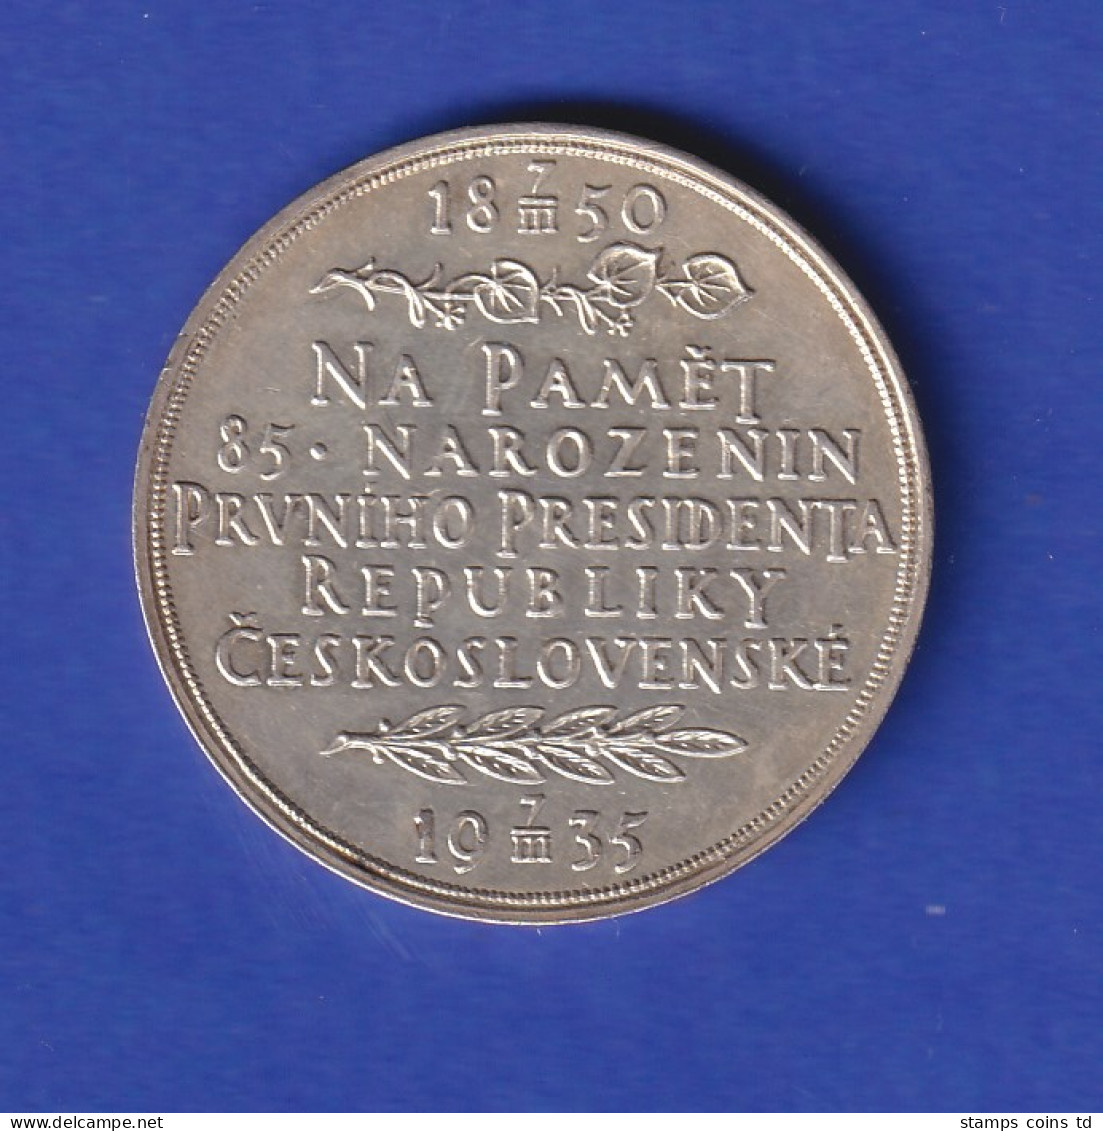 Tschechoslowakei Silberne Medaille Zum 85. Geburtstag Von Tomas G. Masaryk  - Other - Europe